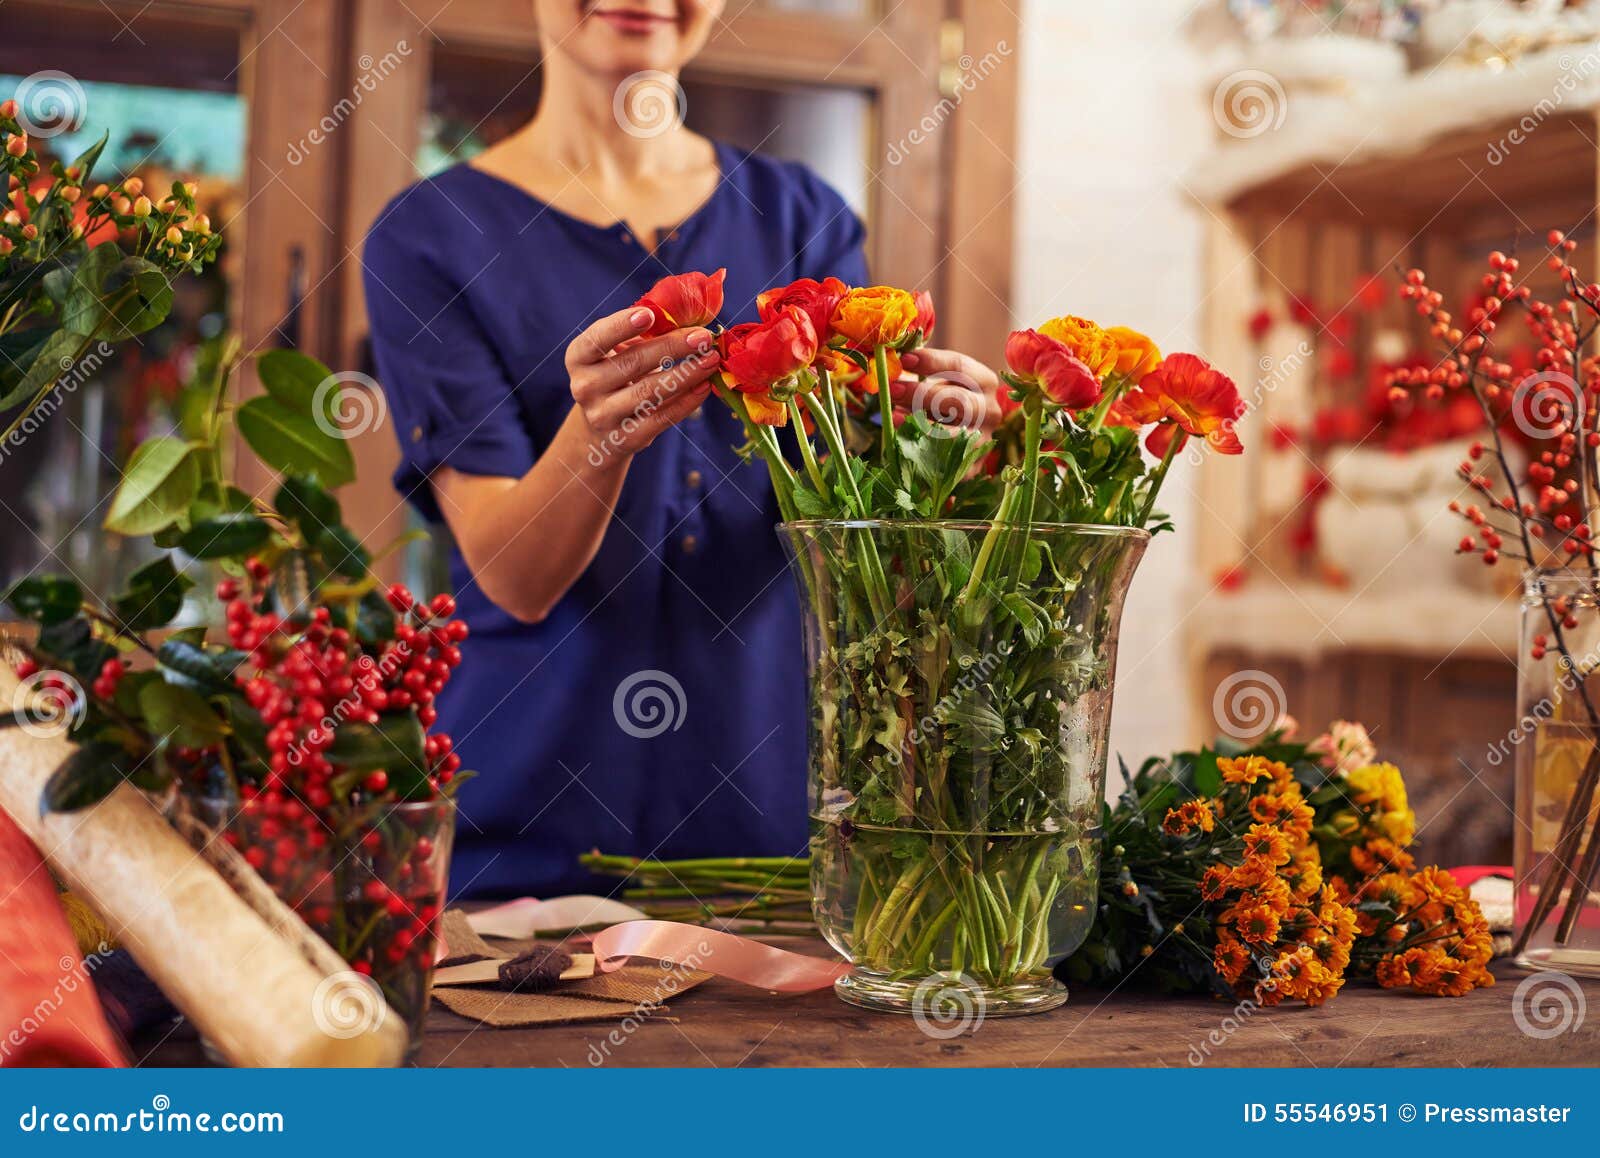 Как продлить жизнь букету. Ваза "женщина". Продлить жизнь цветам в вазе. Цветы которыми дополняют букеты.